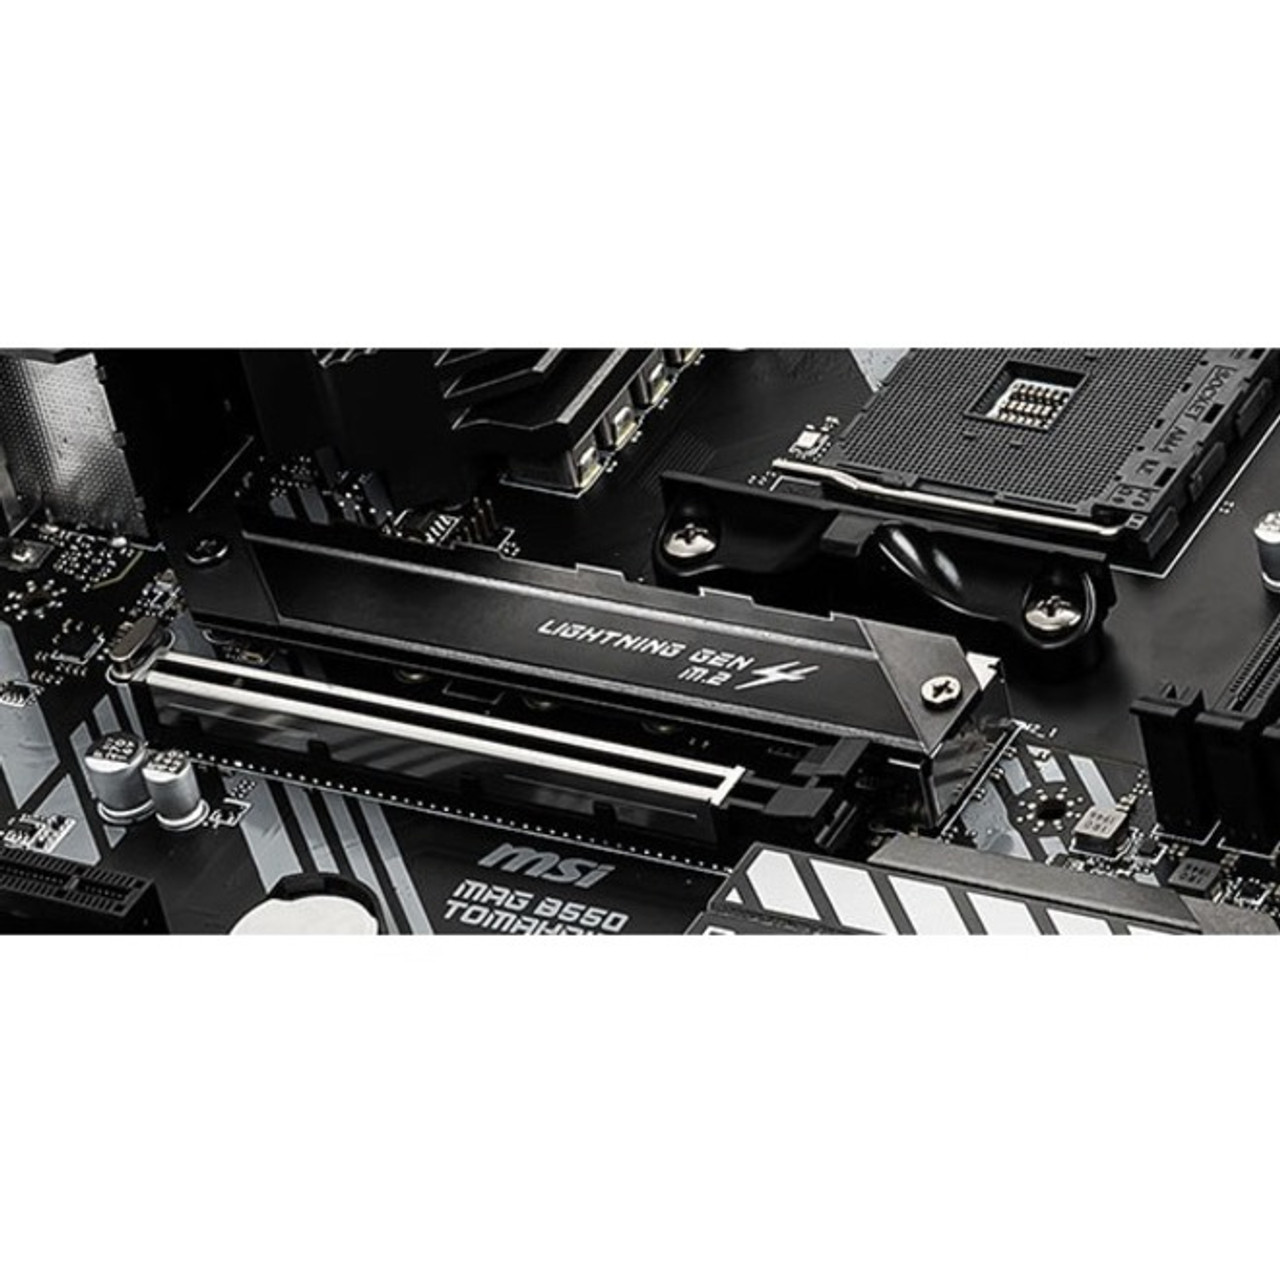 MSI MPG B550 GAMING PLUS AMD AM4 DDR4 M.2 USB 3.2 Gen 2 HDMI ATX